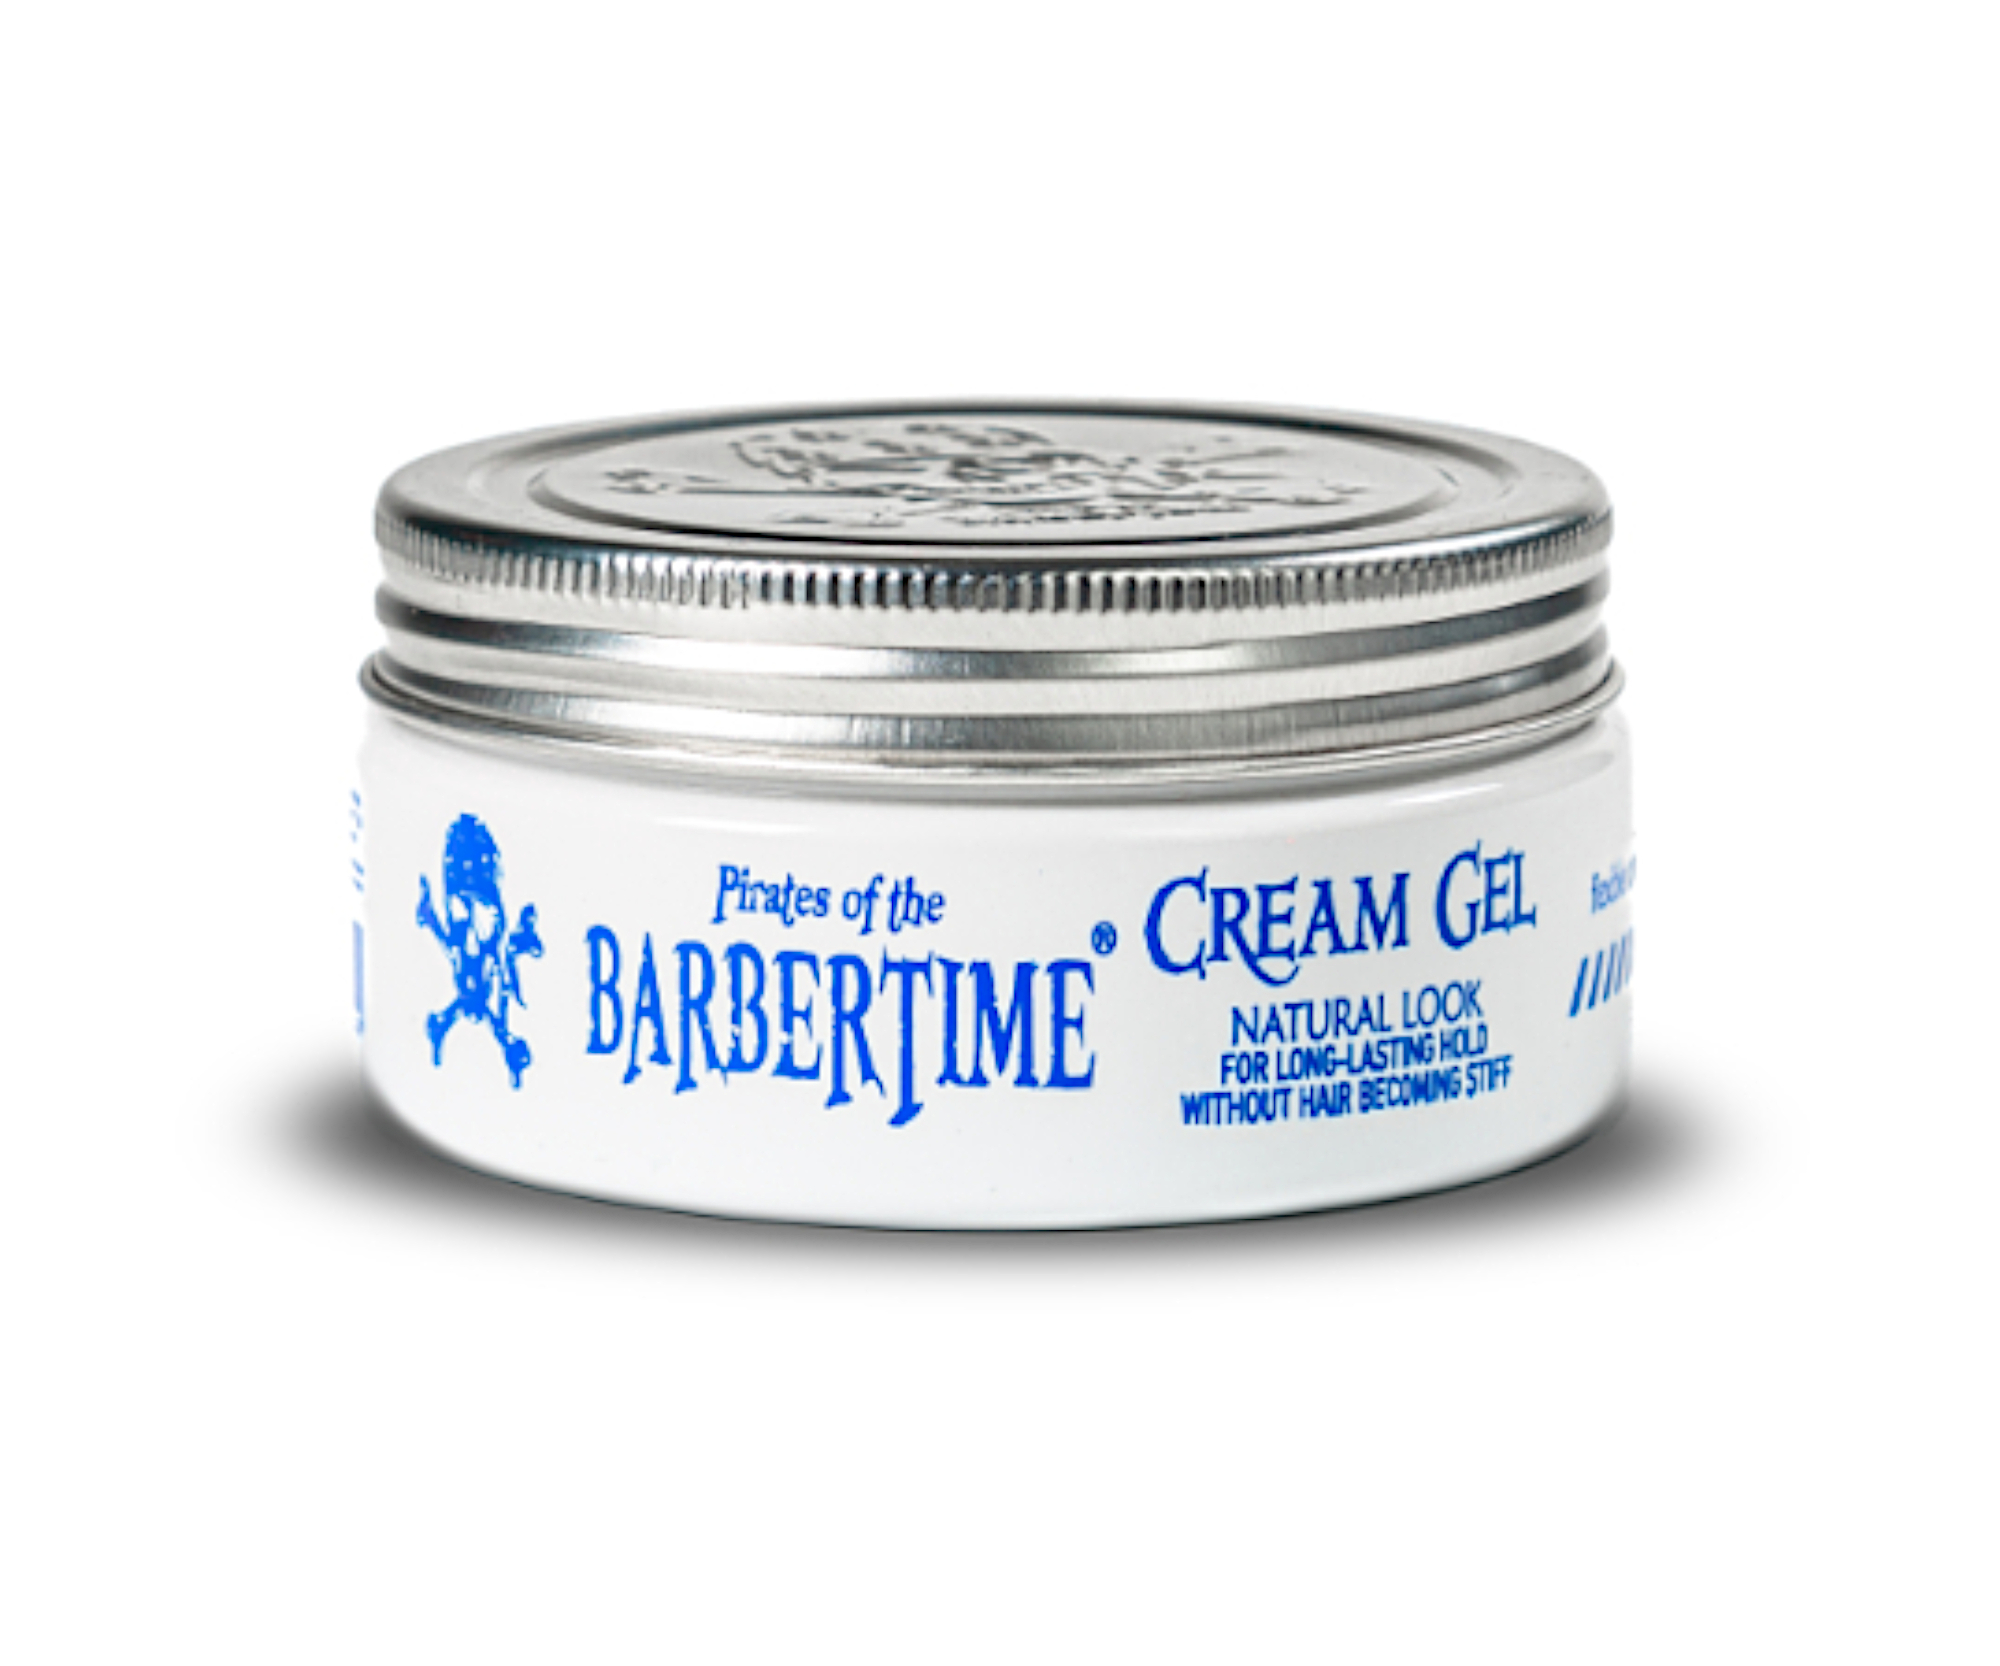 Krémový gel na vlasy Barbertime Cream Gel - 150 ml - Pirates of the Barbertime + dárek zdarma